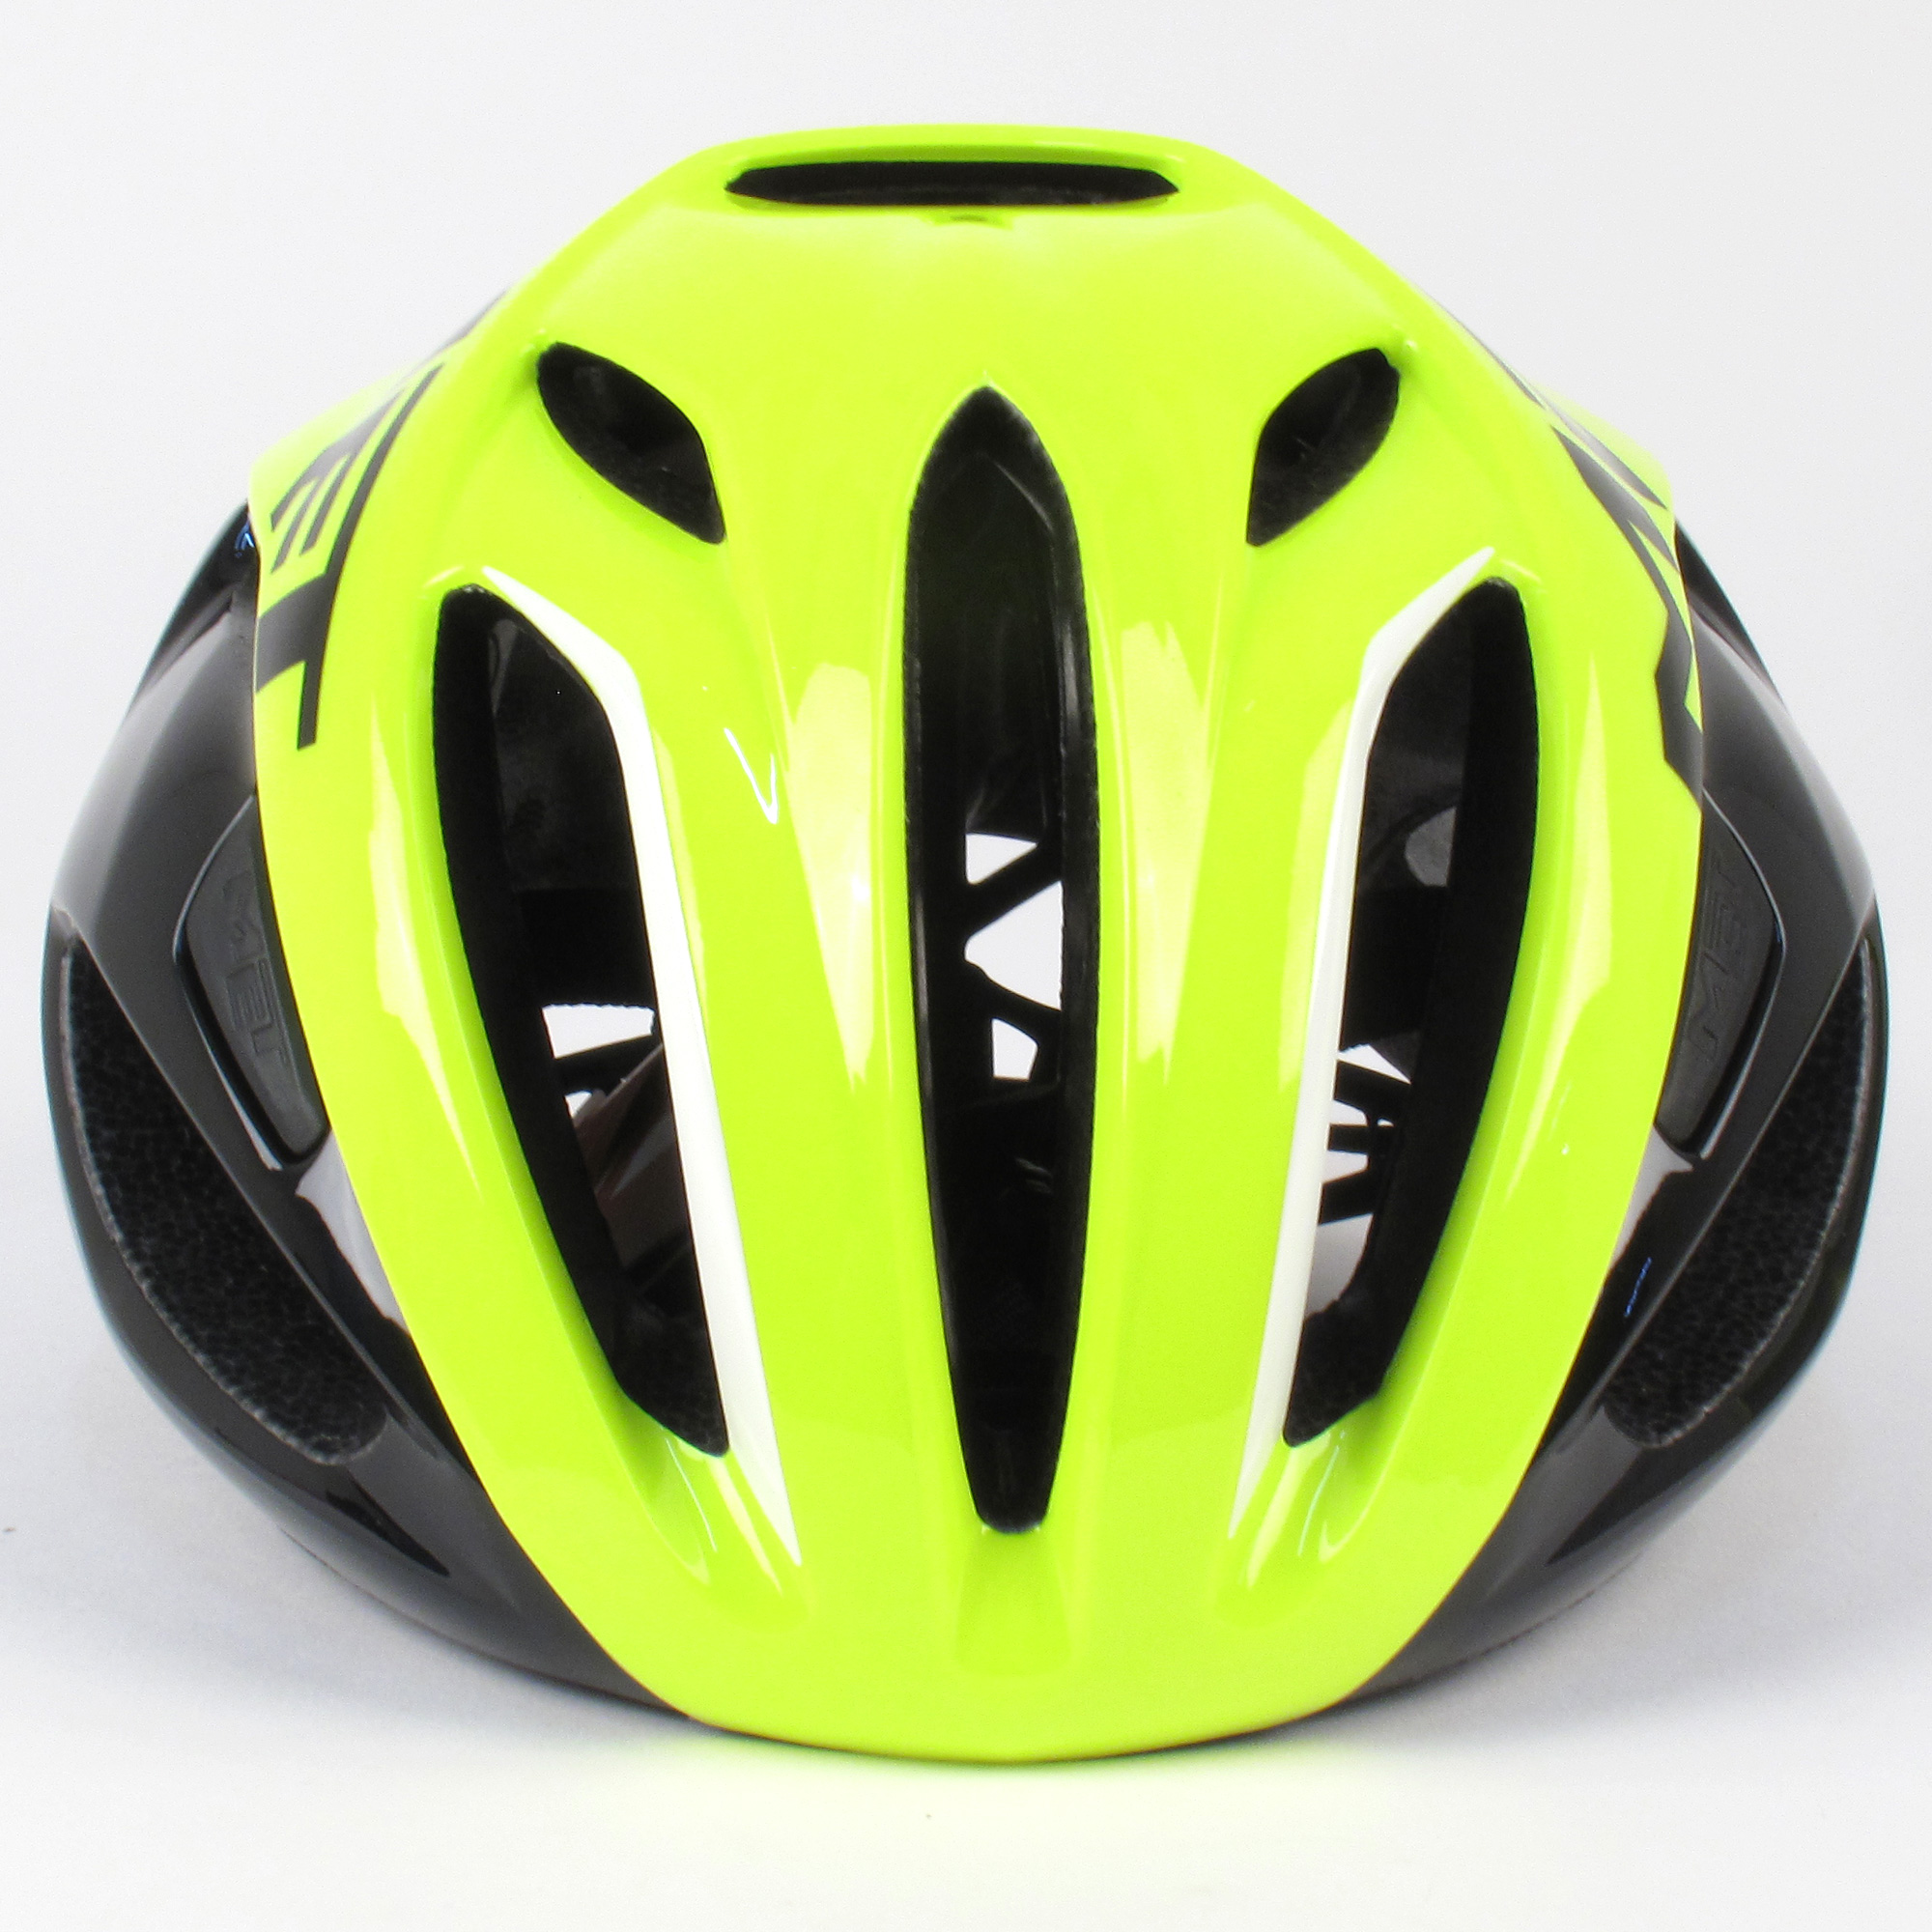 MET Rivale Road Bike Helmet // Safety Yellow/Black // Large | eBay